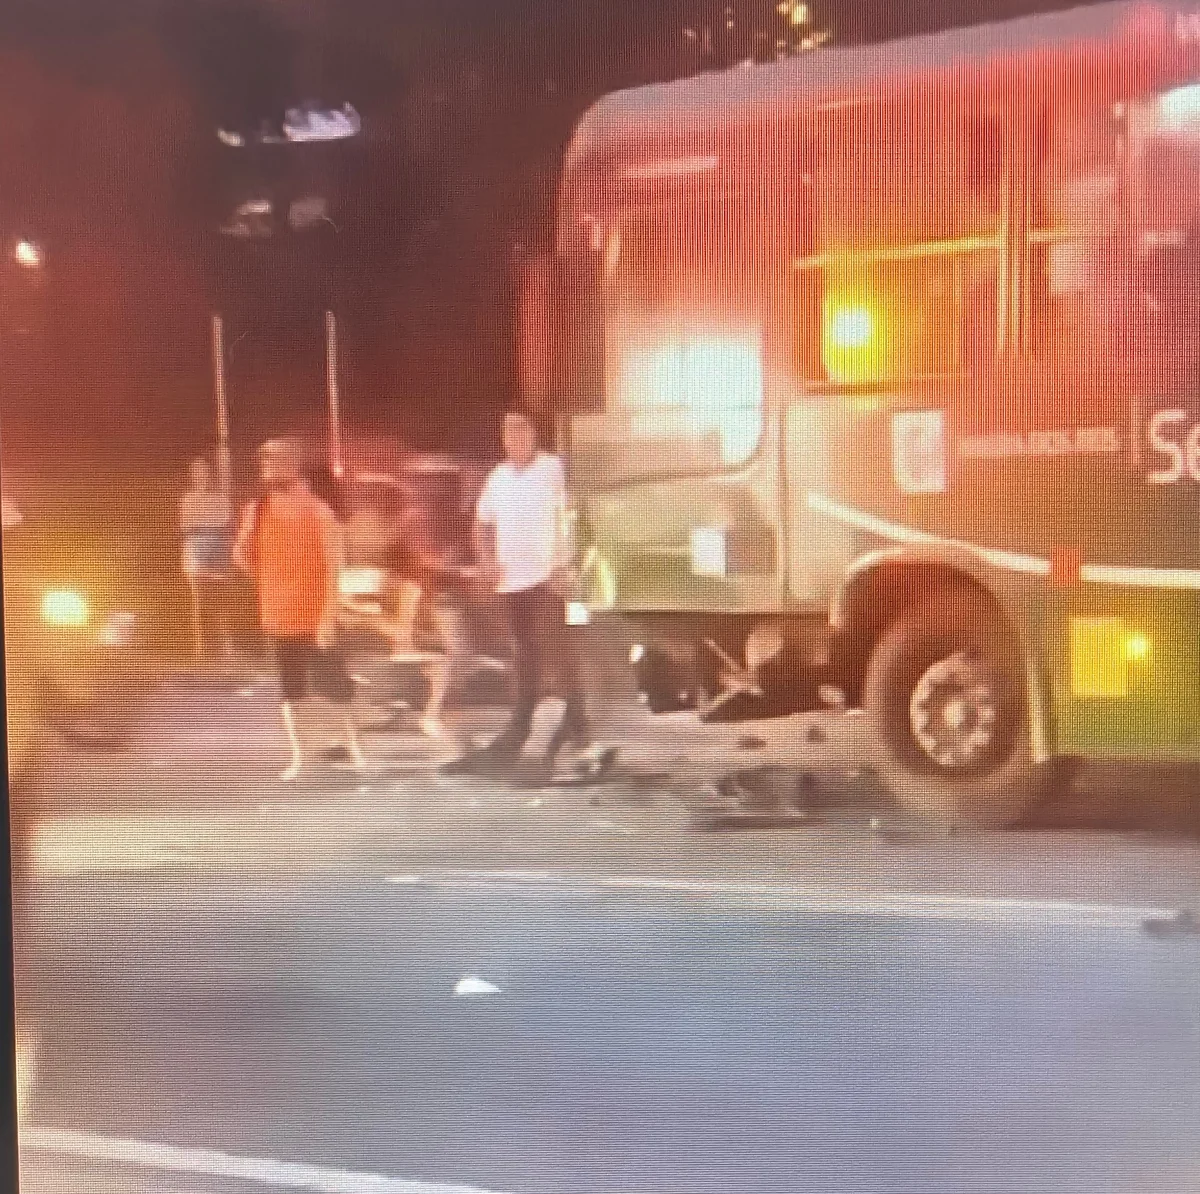 Acidente com ônibus e carro na Rio-Santos deixa feridos, em Angra dos Reis (RJ)